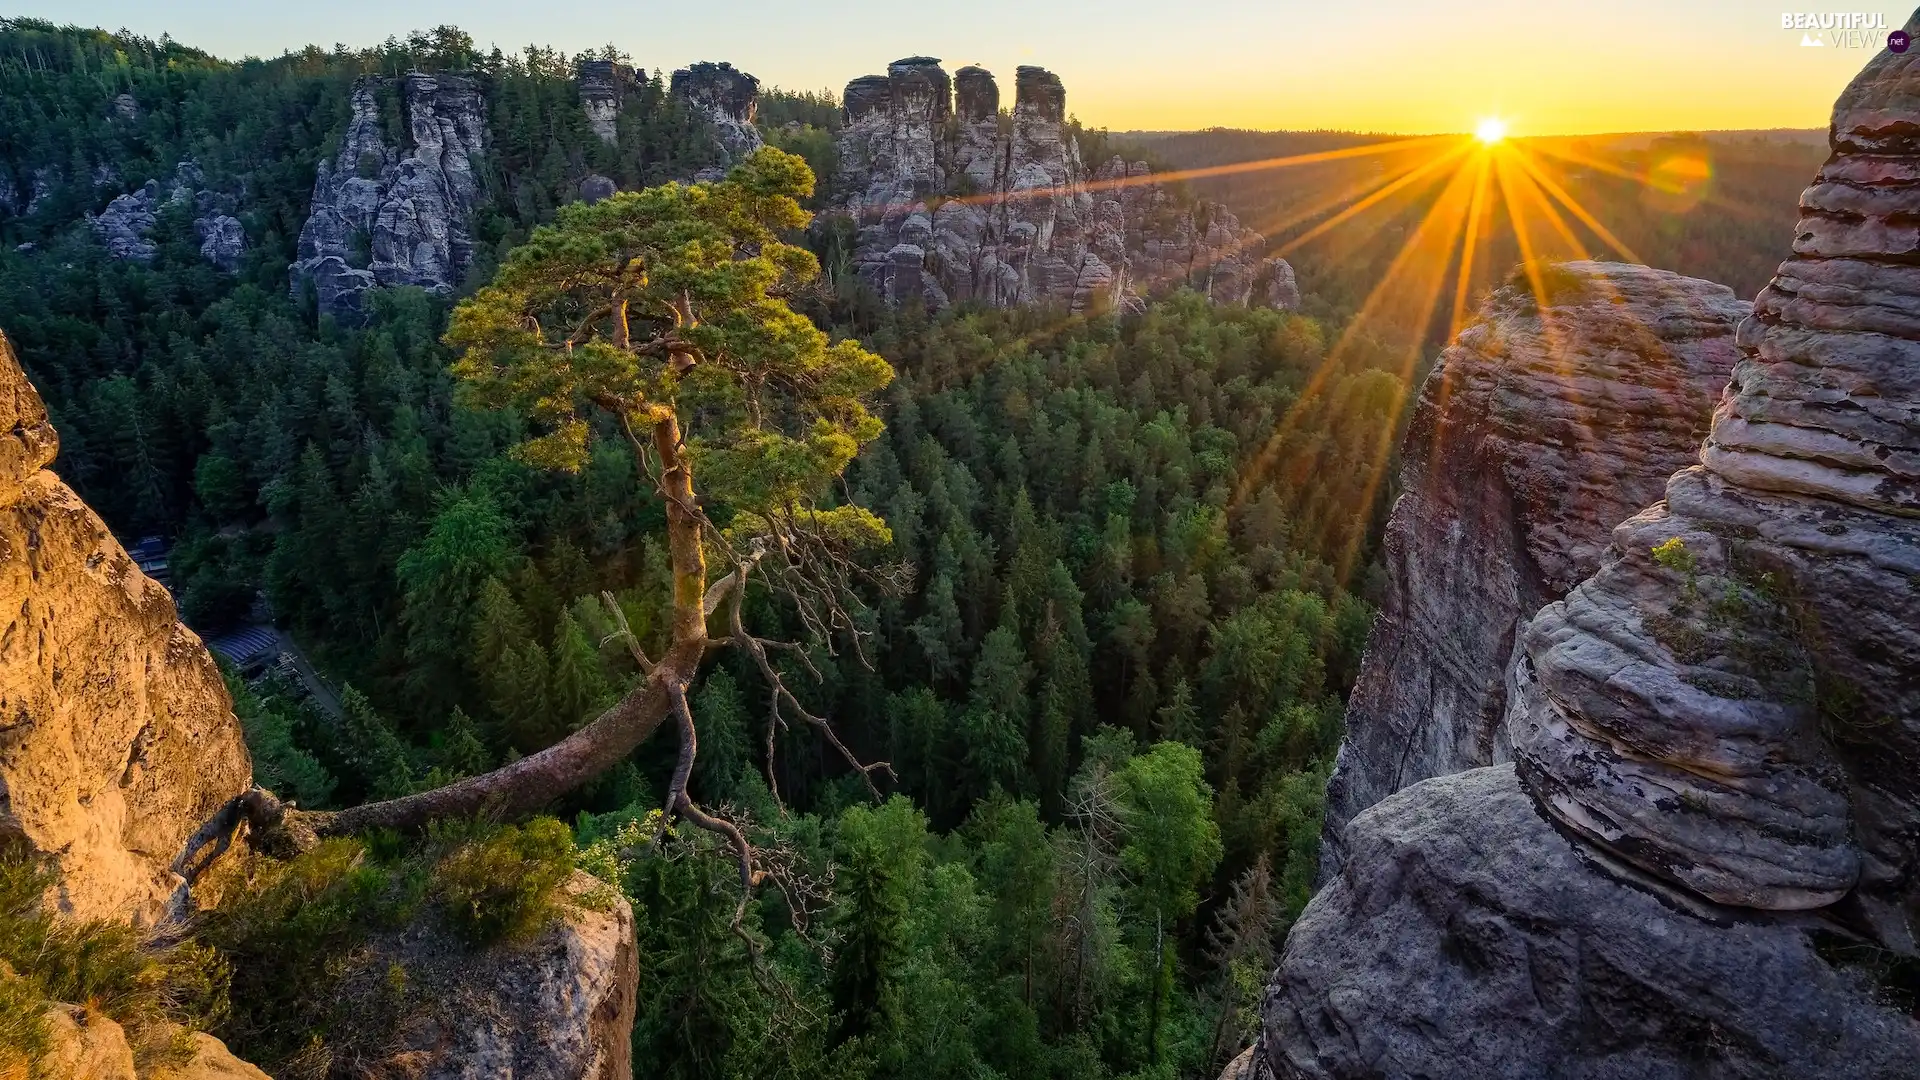 Děčínská vrchovina, rocks, rays of the Sun, pine, Sunrise, Saxon Switzerland National Park, Germany